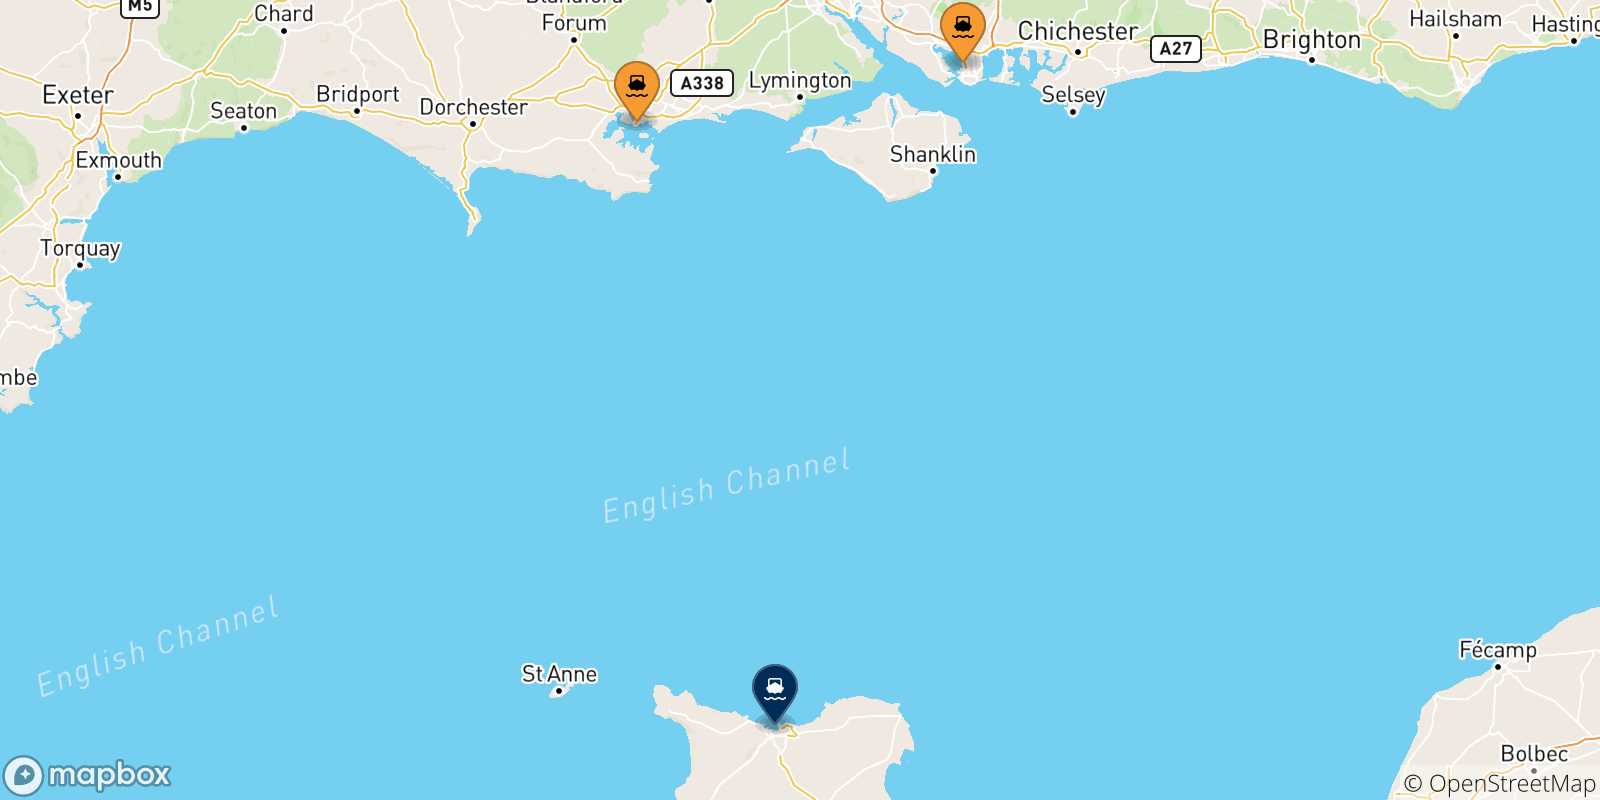 Mappa delle possibili rotte tra il Regno Unito e Cherbourg